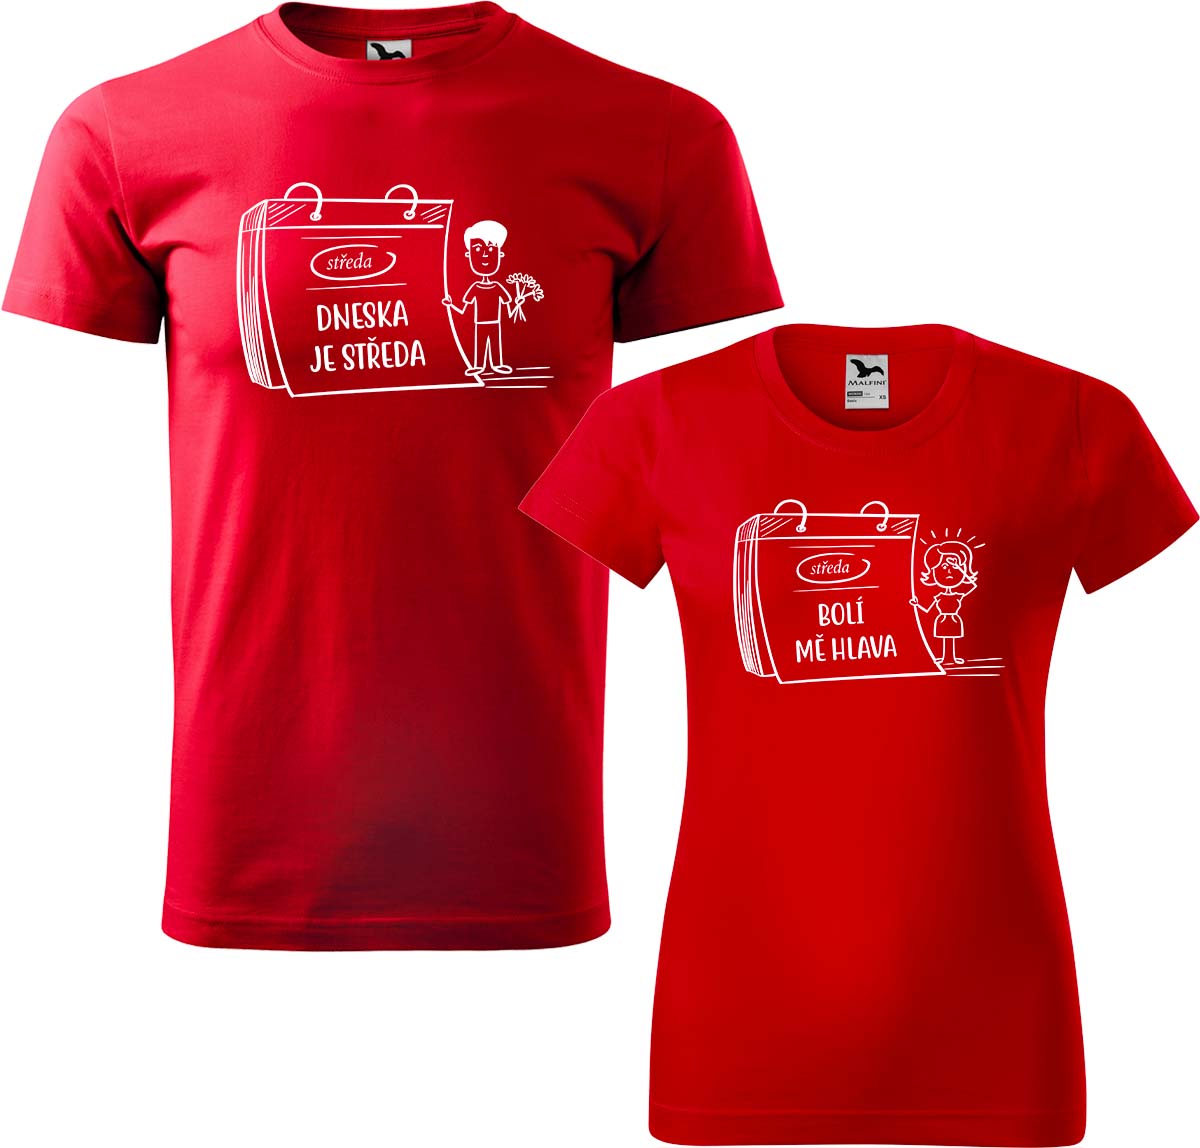 Trička pro páry - Dneska je středa Barva: Červená (07), Velikost dámské tričko: L, Velikost pánské tričko: L